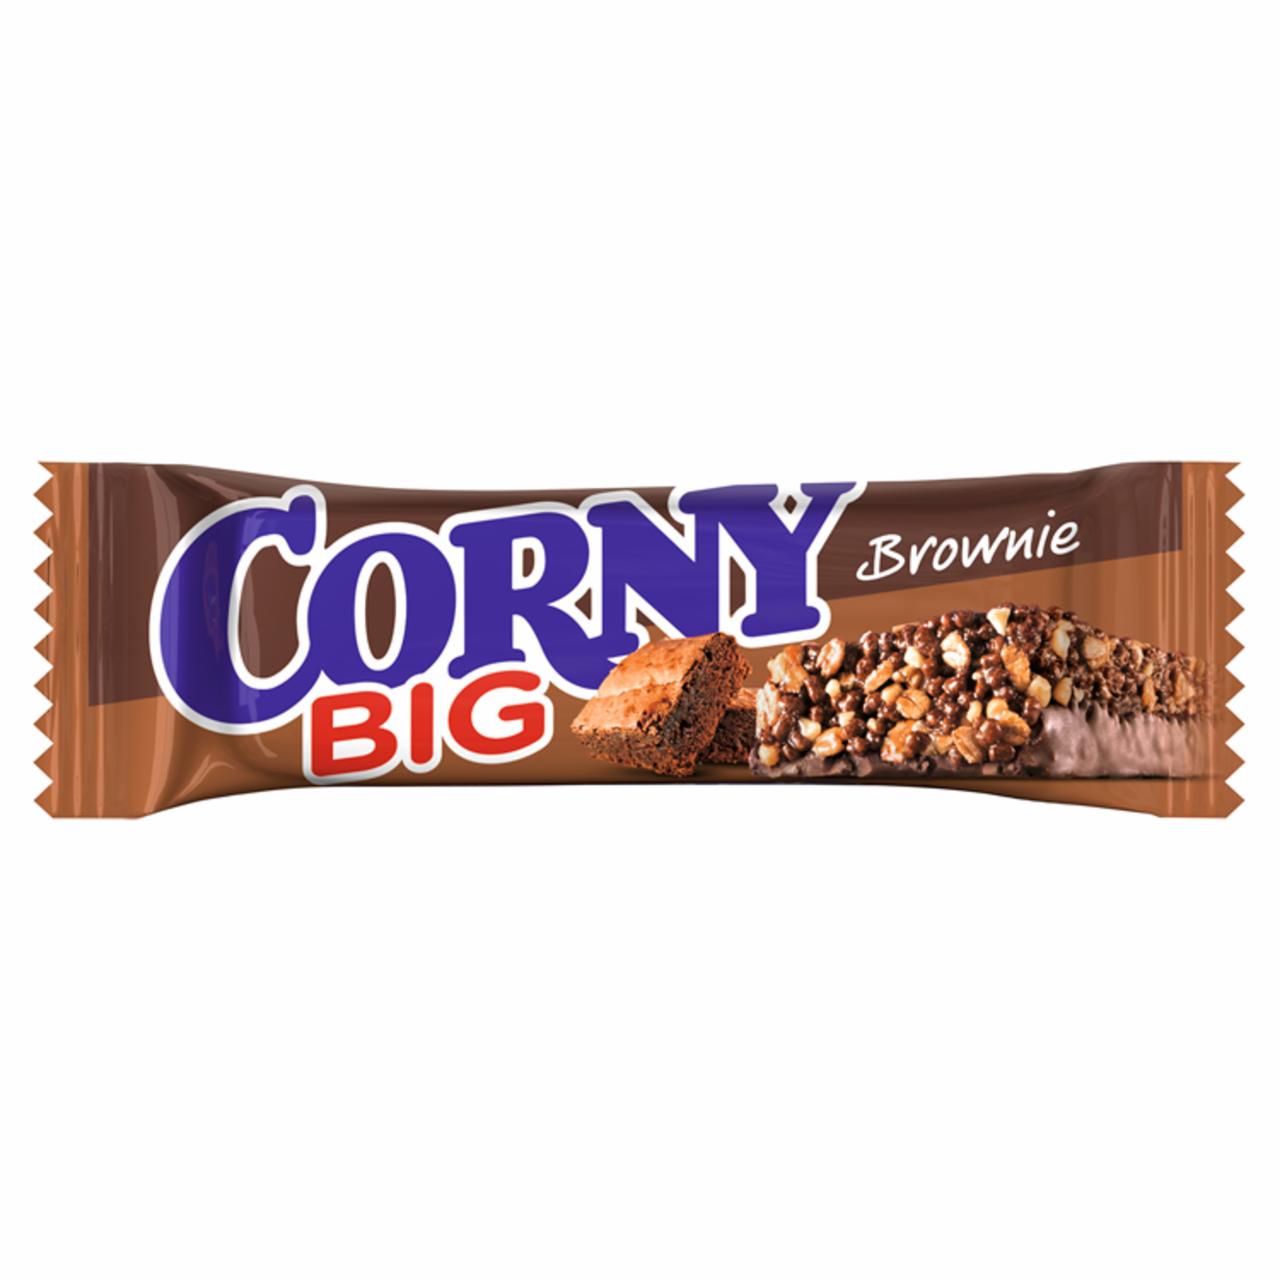 Képek - Corny Big brownie ízű müzliszelet tejcsokoládéval 50 g